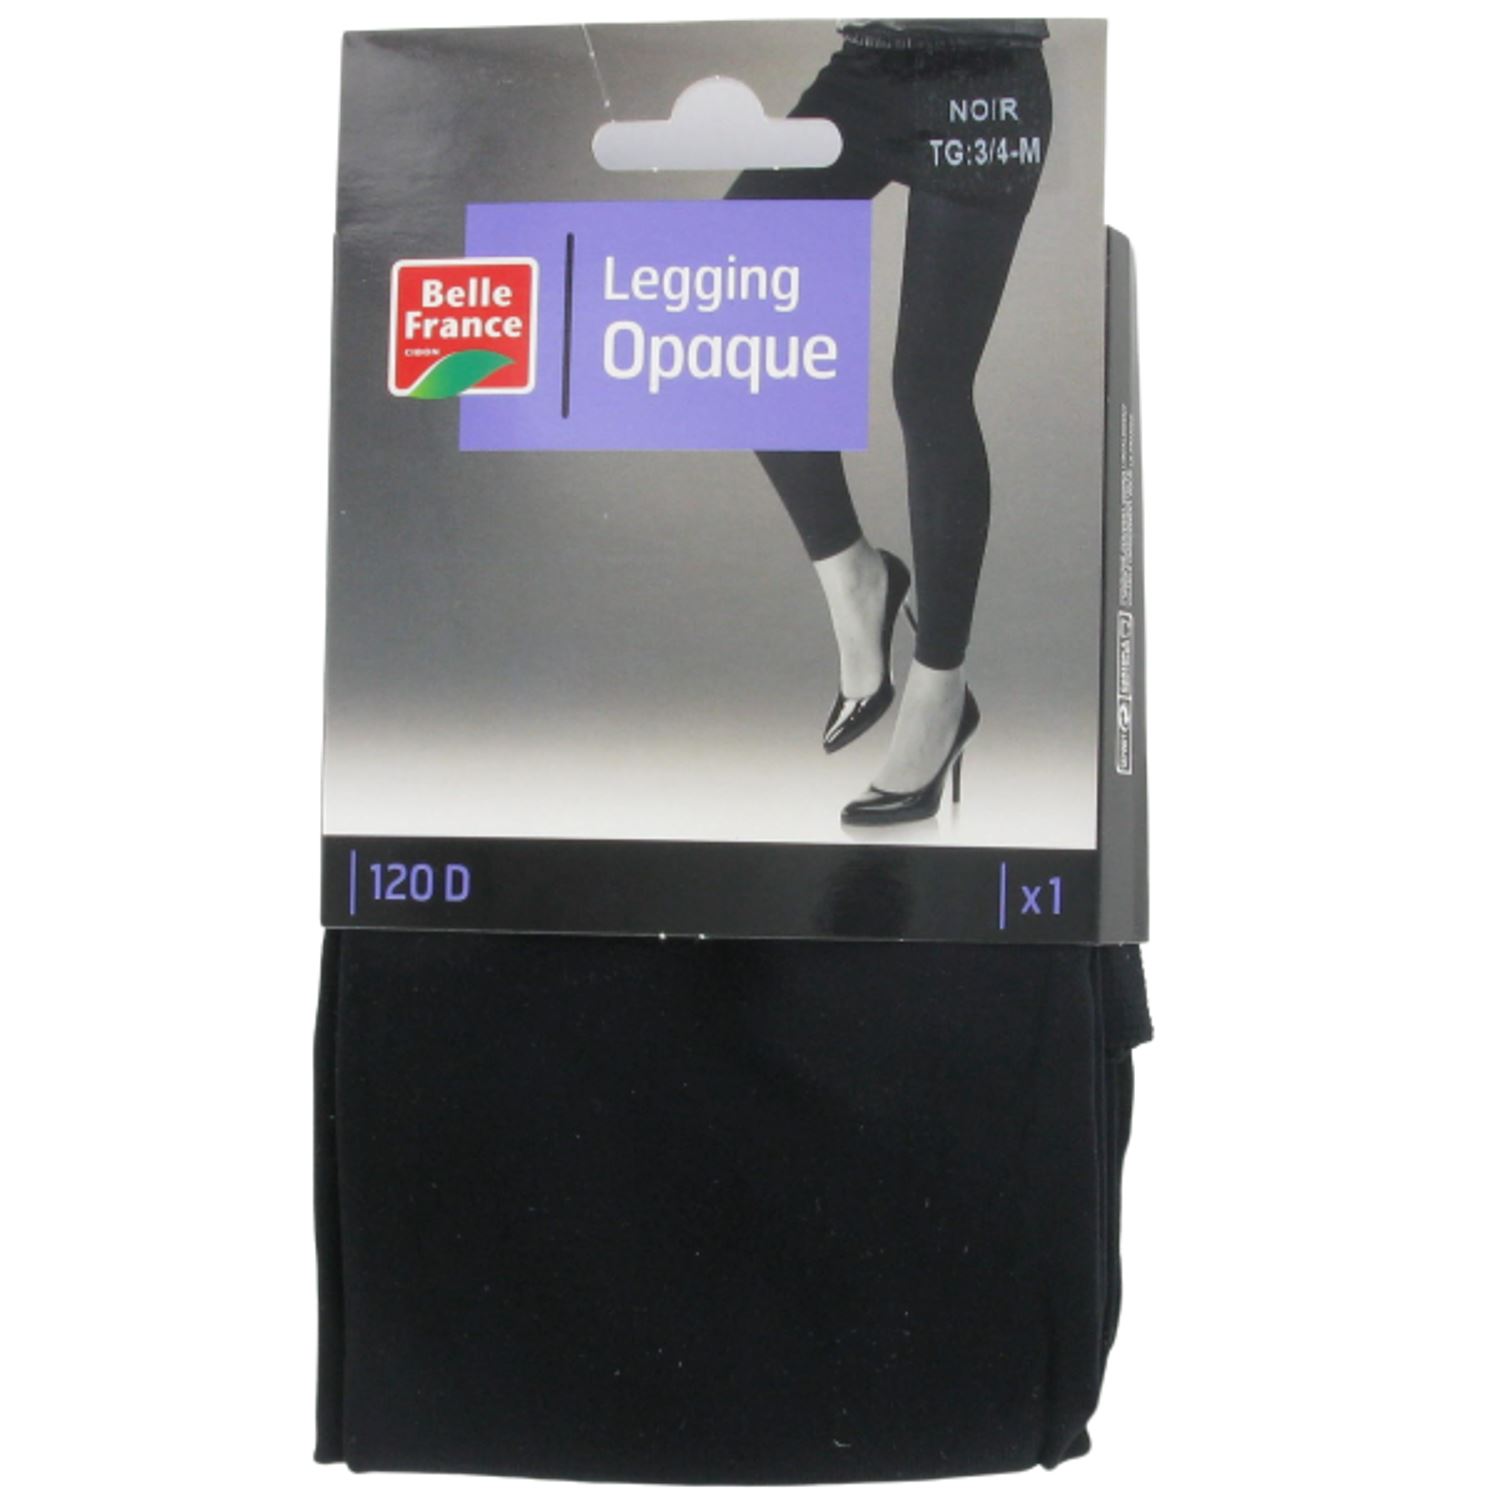 Legging opaque 120 d 3/4 m noir x 1